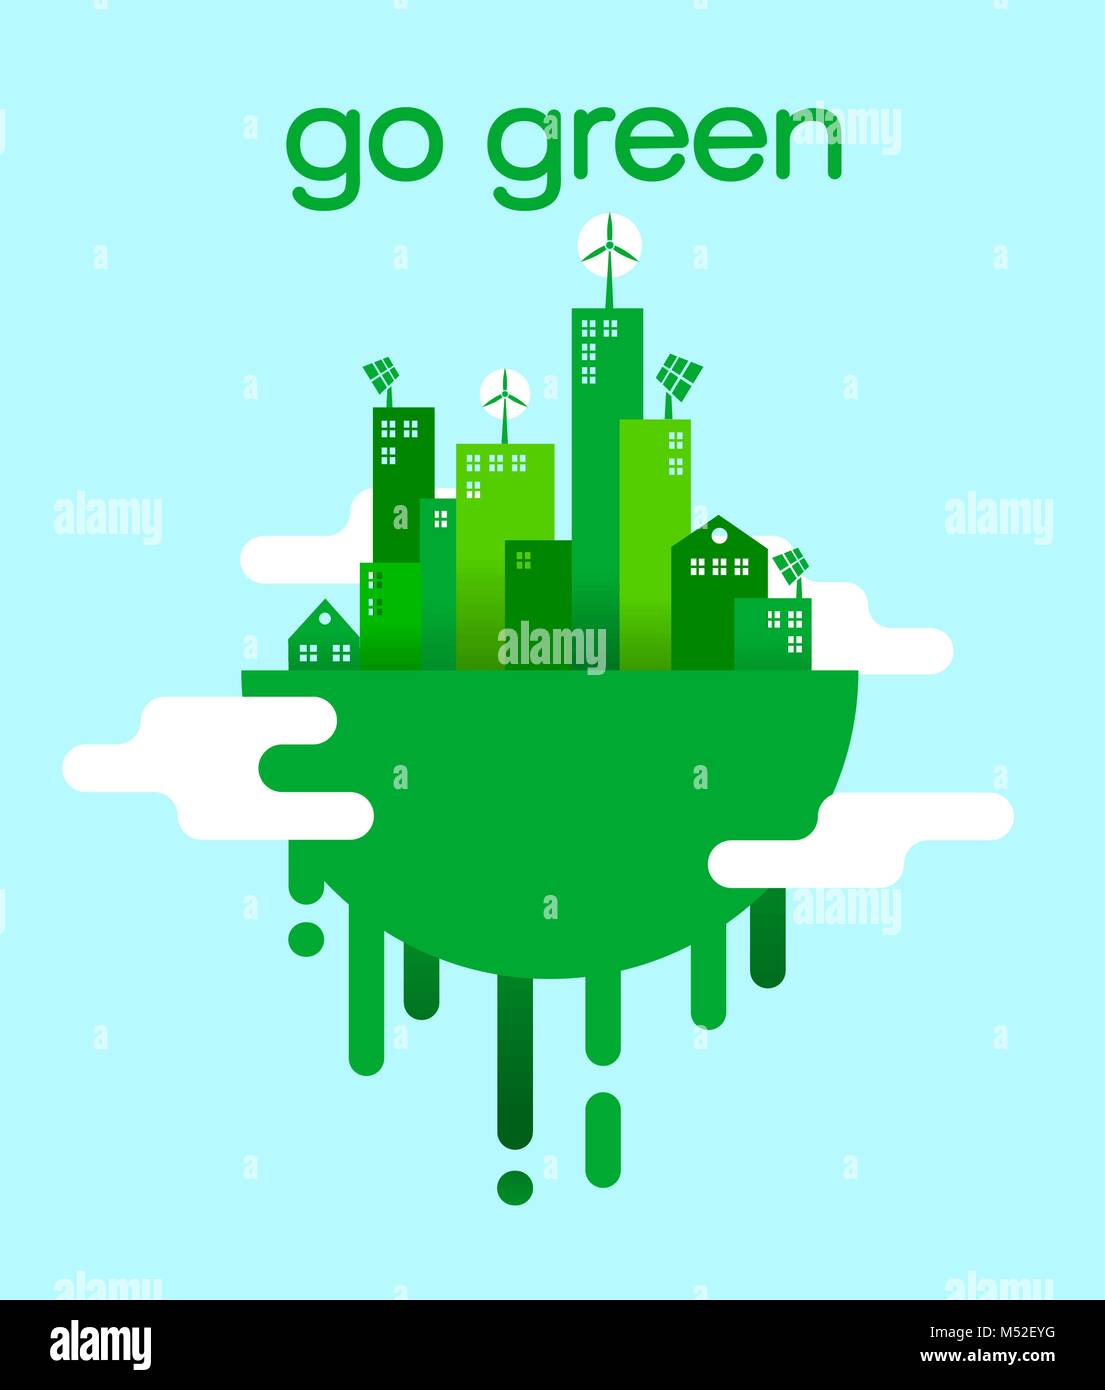 Télévision Go Green concept illustration avec eco friendly city pour l'environnement soins de santé et de vie durable. Vecteur EPS10. Illustration de Vecteur